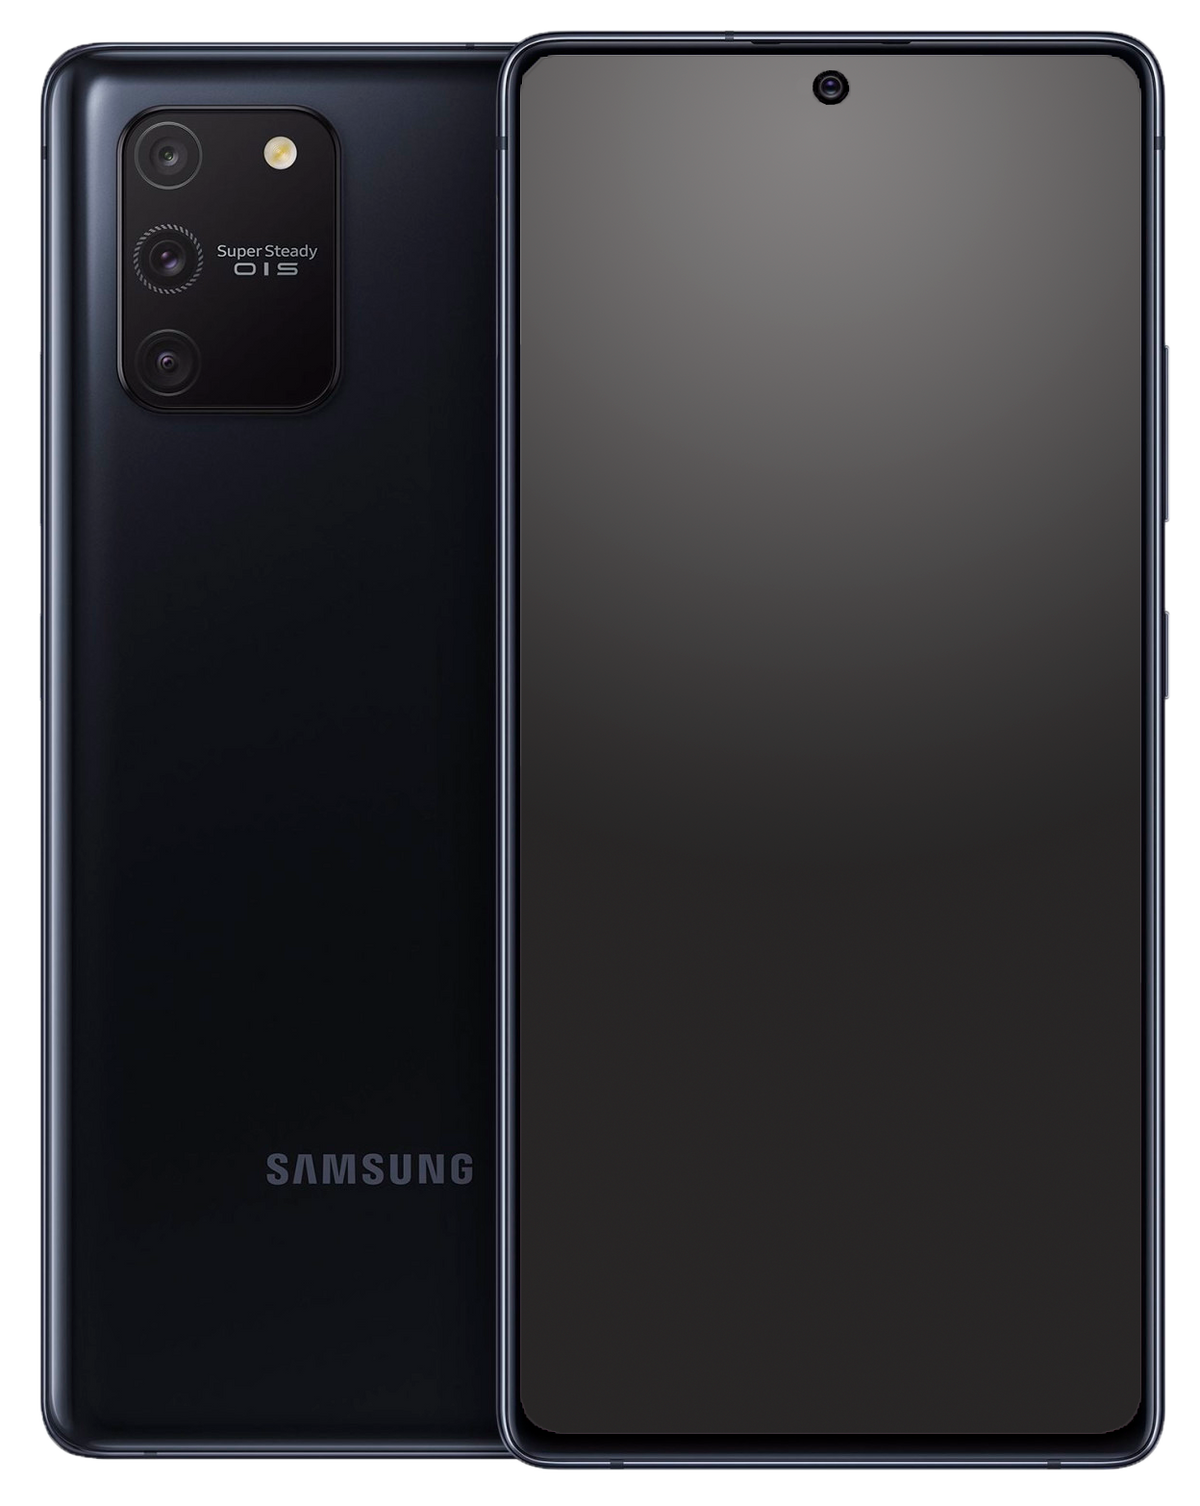 Samsung Galaxy S10 Lite Dual-SIM schwarz - Ohne Vertrag